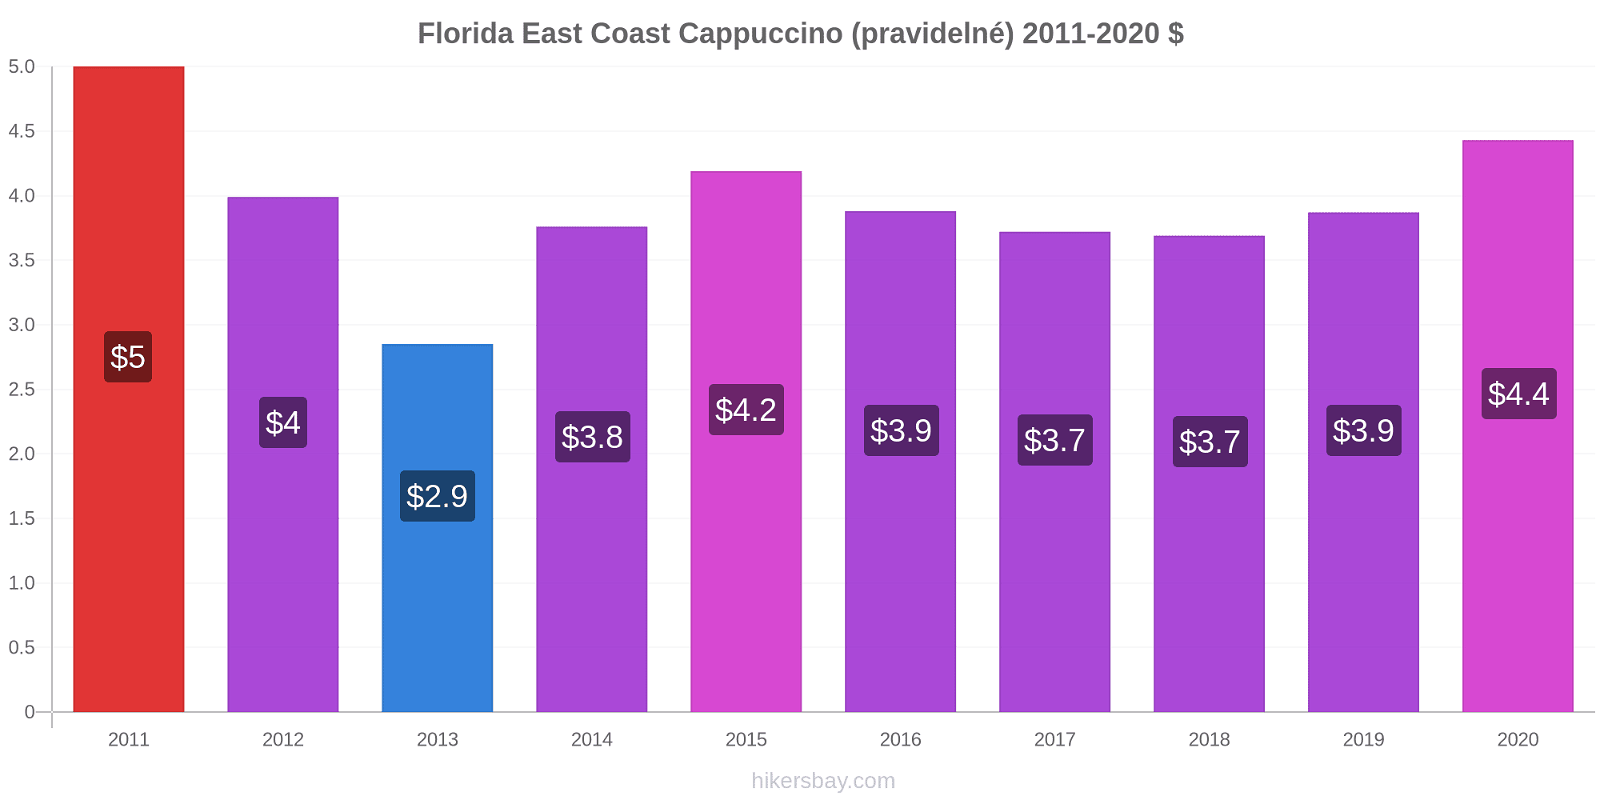 Florida East Coast změny cen Cappuccino (pravidelné) hikersbay.com